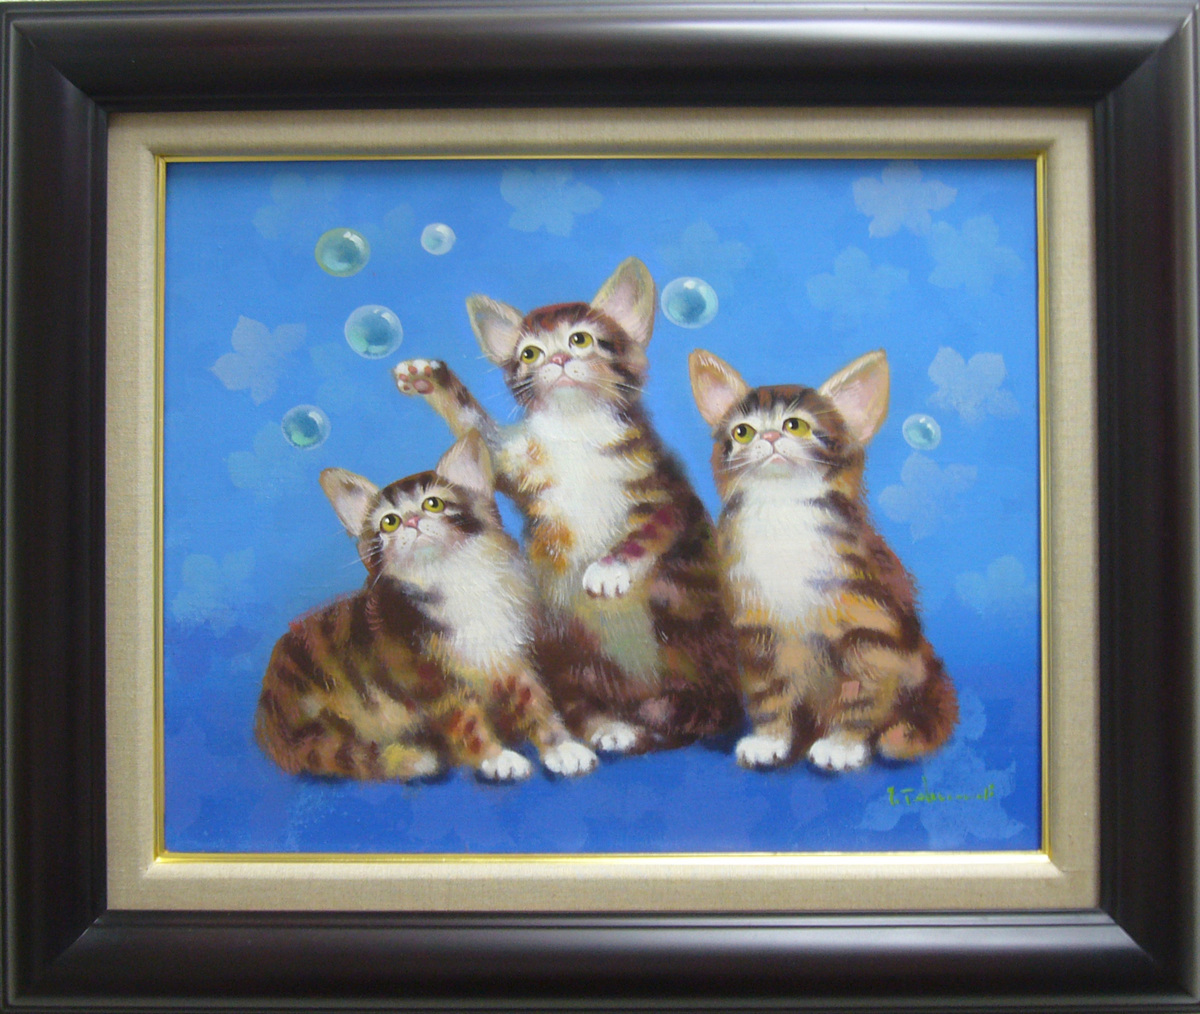 Gemälde Ölgemälde Toshihiko Takeuchi Handschriftliches Ölgemälde Tiergemälde Seifenblasen und Katze Kostenloser Versand, Malerei, Ölgemälde, Tierzeichnung